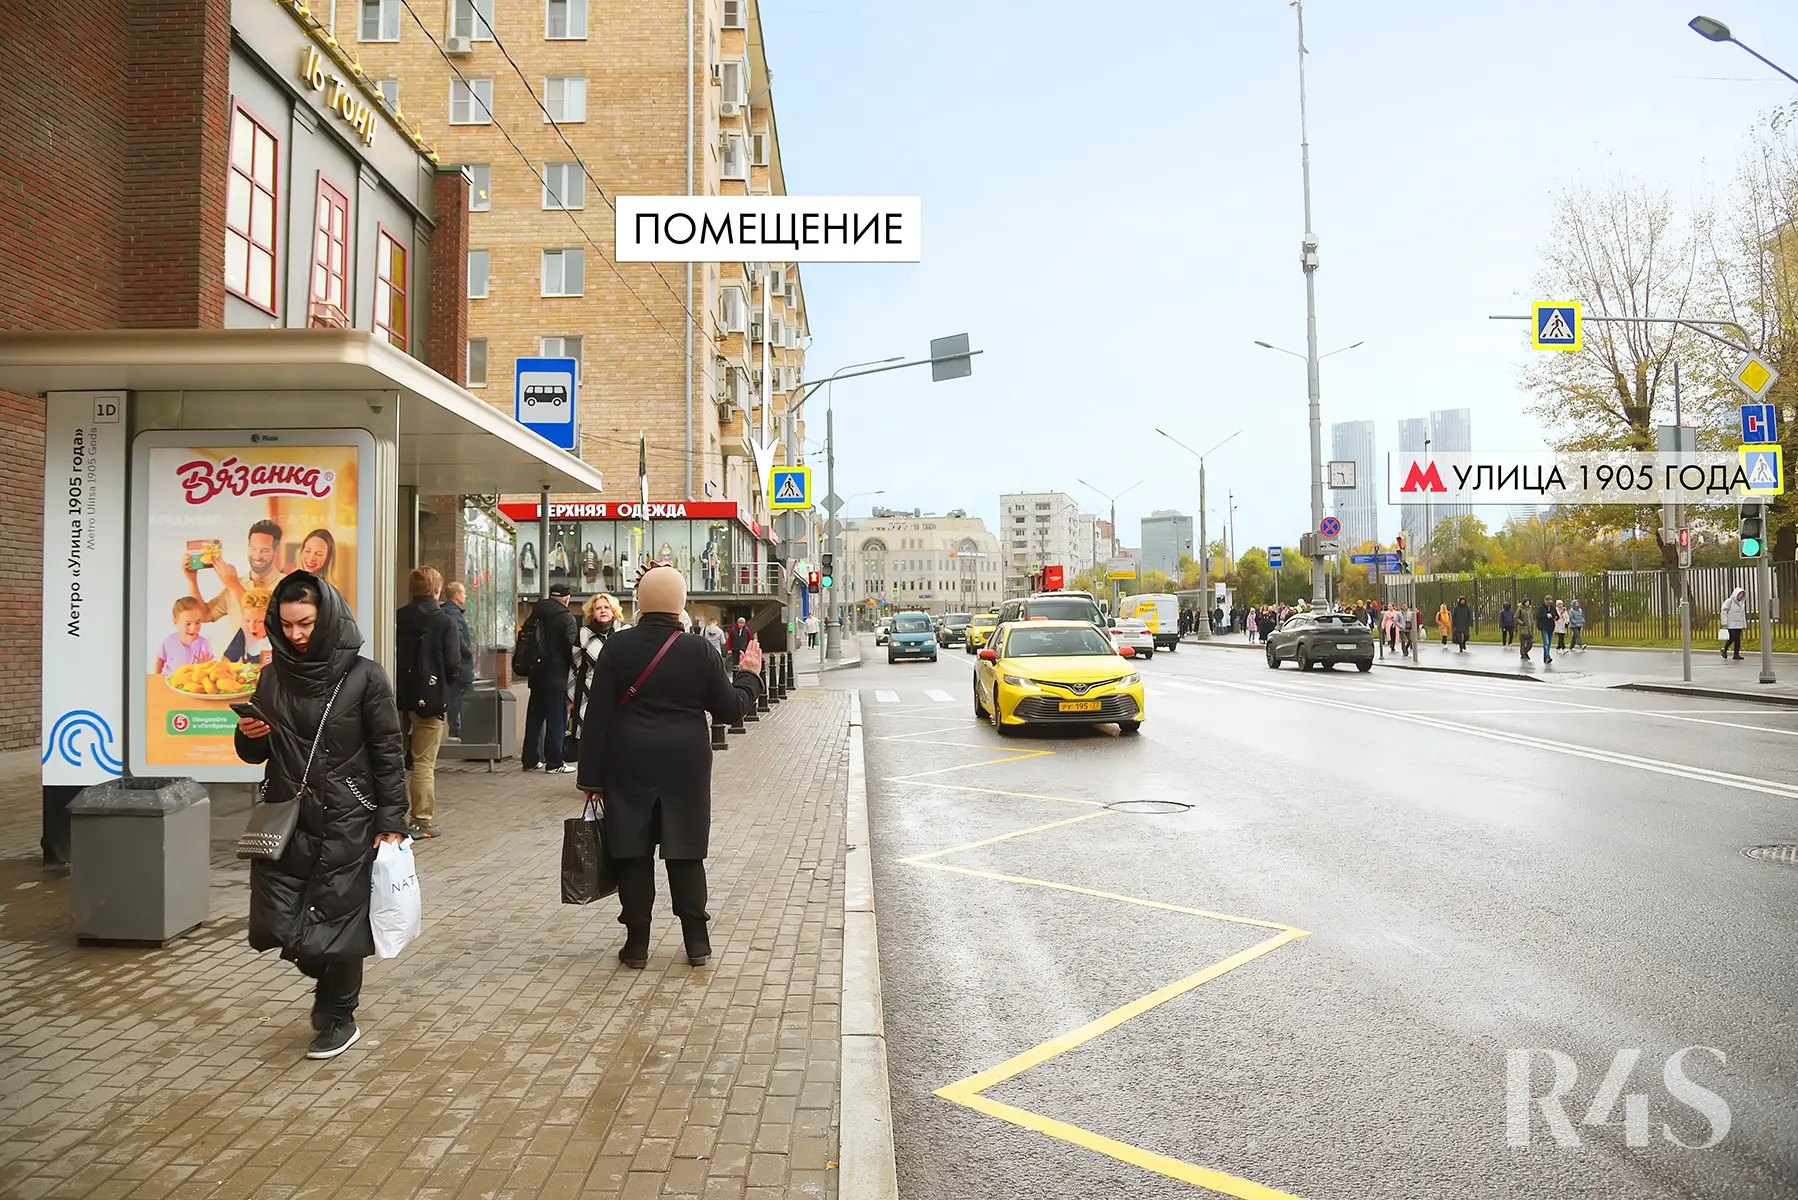 Продажа торгового помещения площадью 30.2 м2 в Москве: Пресненский Вал, 4/29 R4S | Realty4Sale